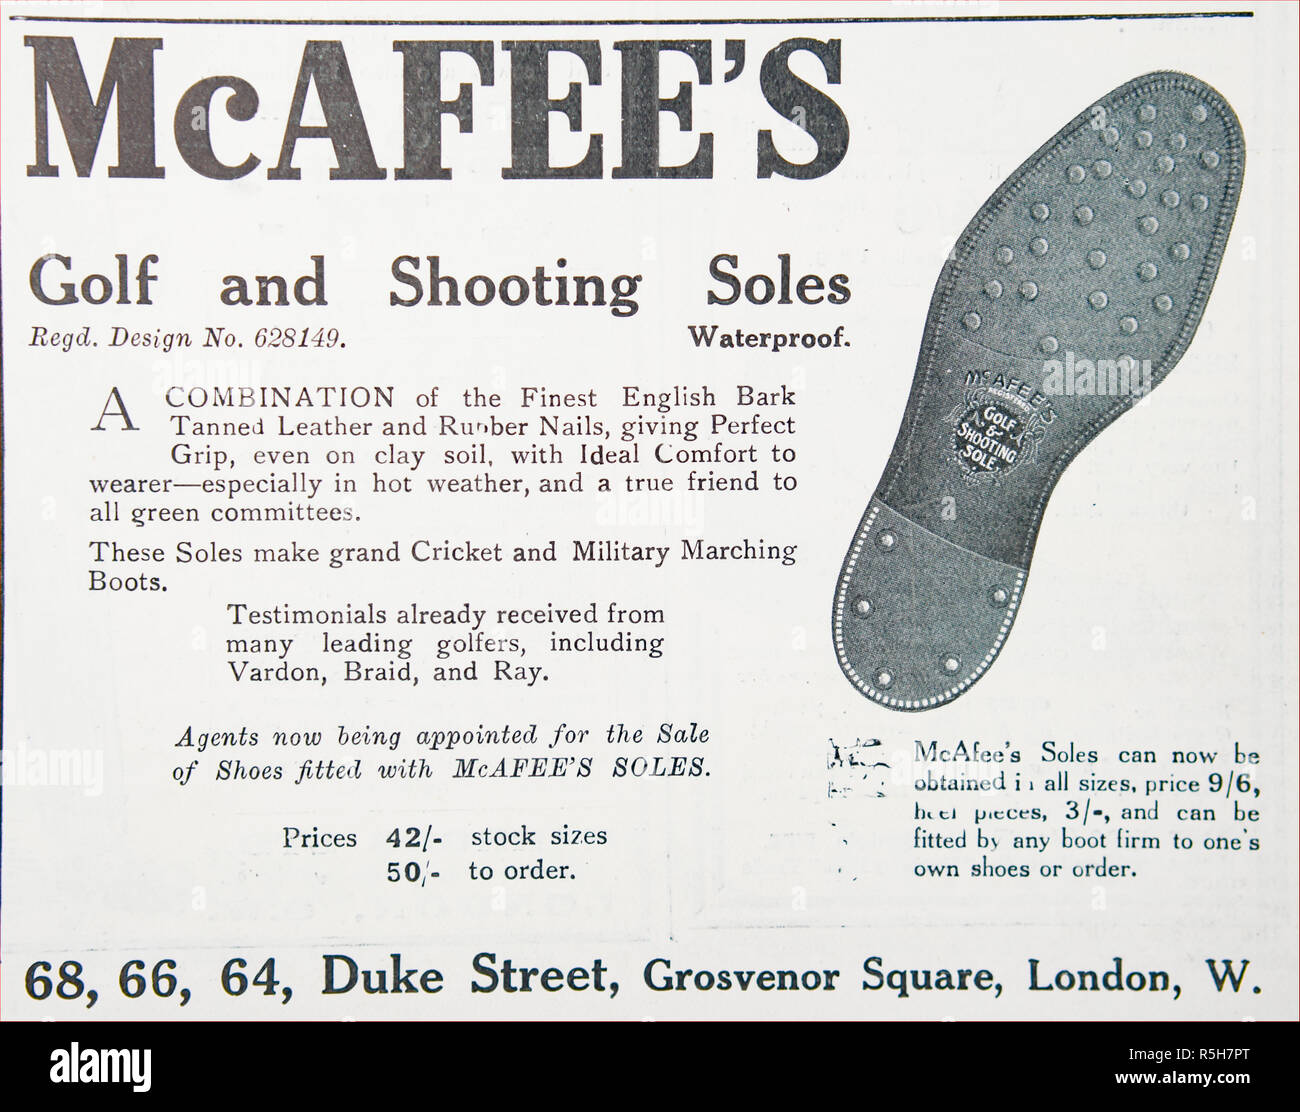 Eine Anzeige für McAffee's Golf und schießen Sohlen für Schuhe. Aus einem alten britischen Zeitschrift aus dem Zeitraum 1914-1918. Stockfoto